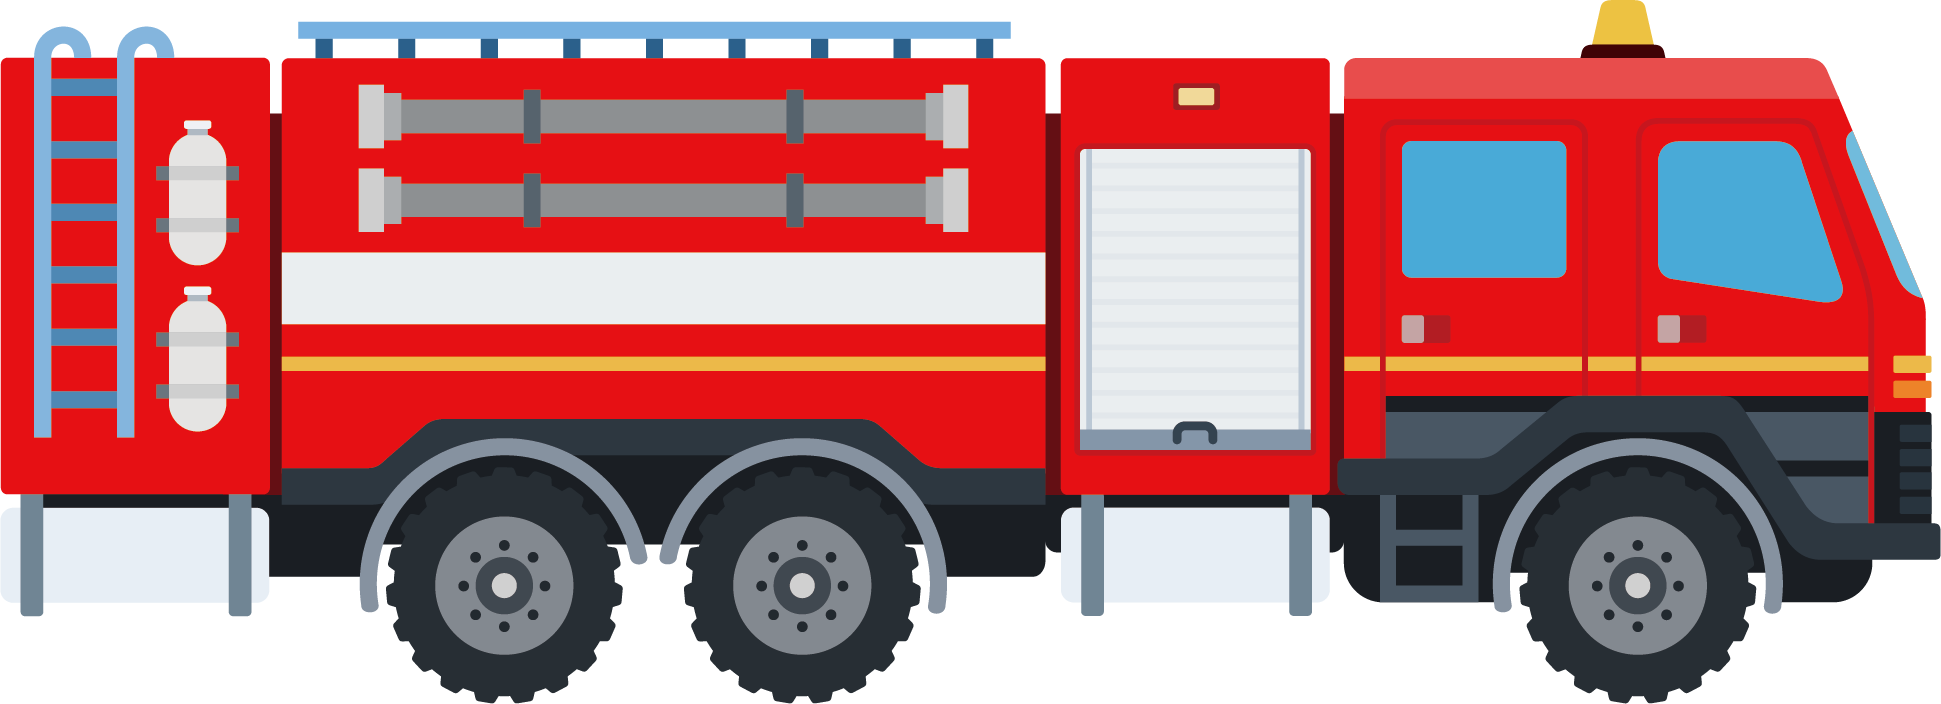 Fire Engine Car Fire Department Firefighter - Fire Engine (1941x704)